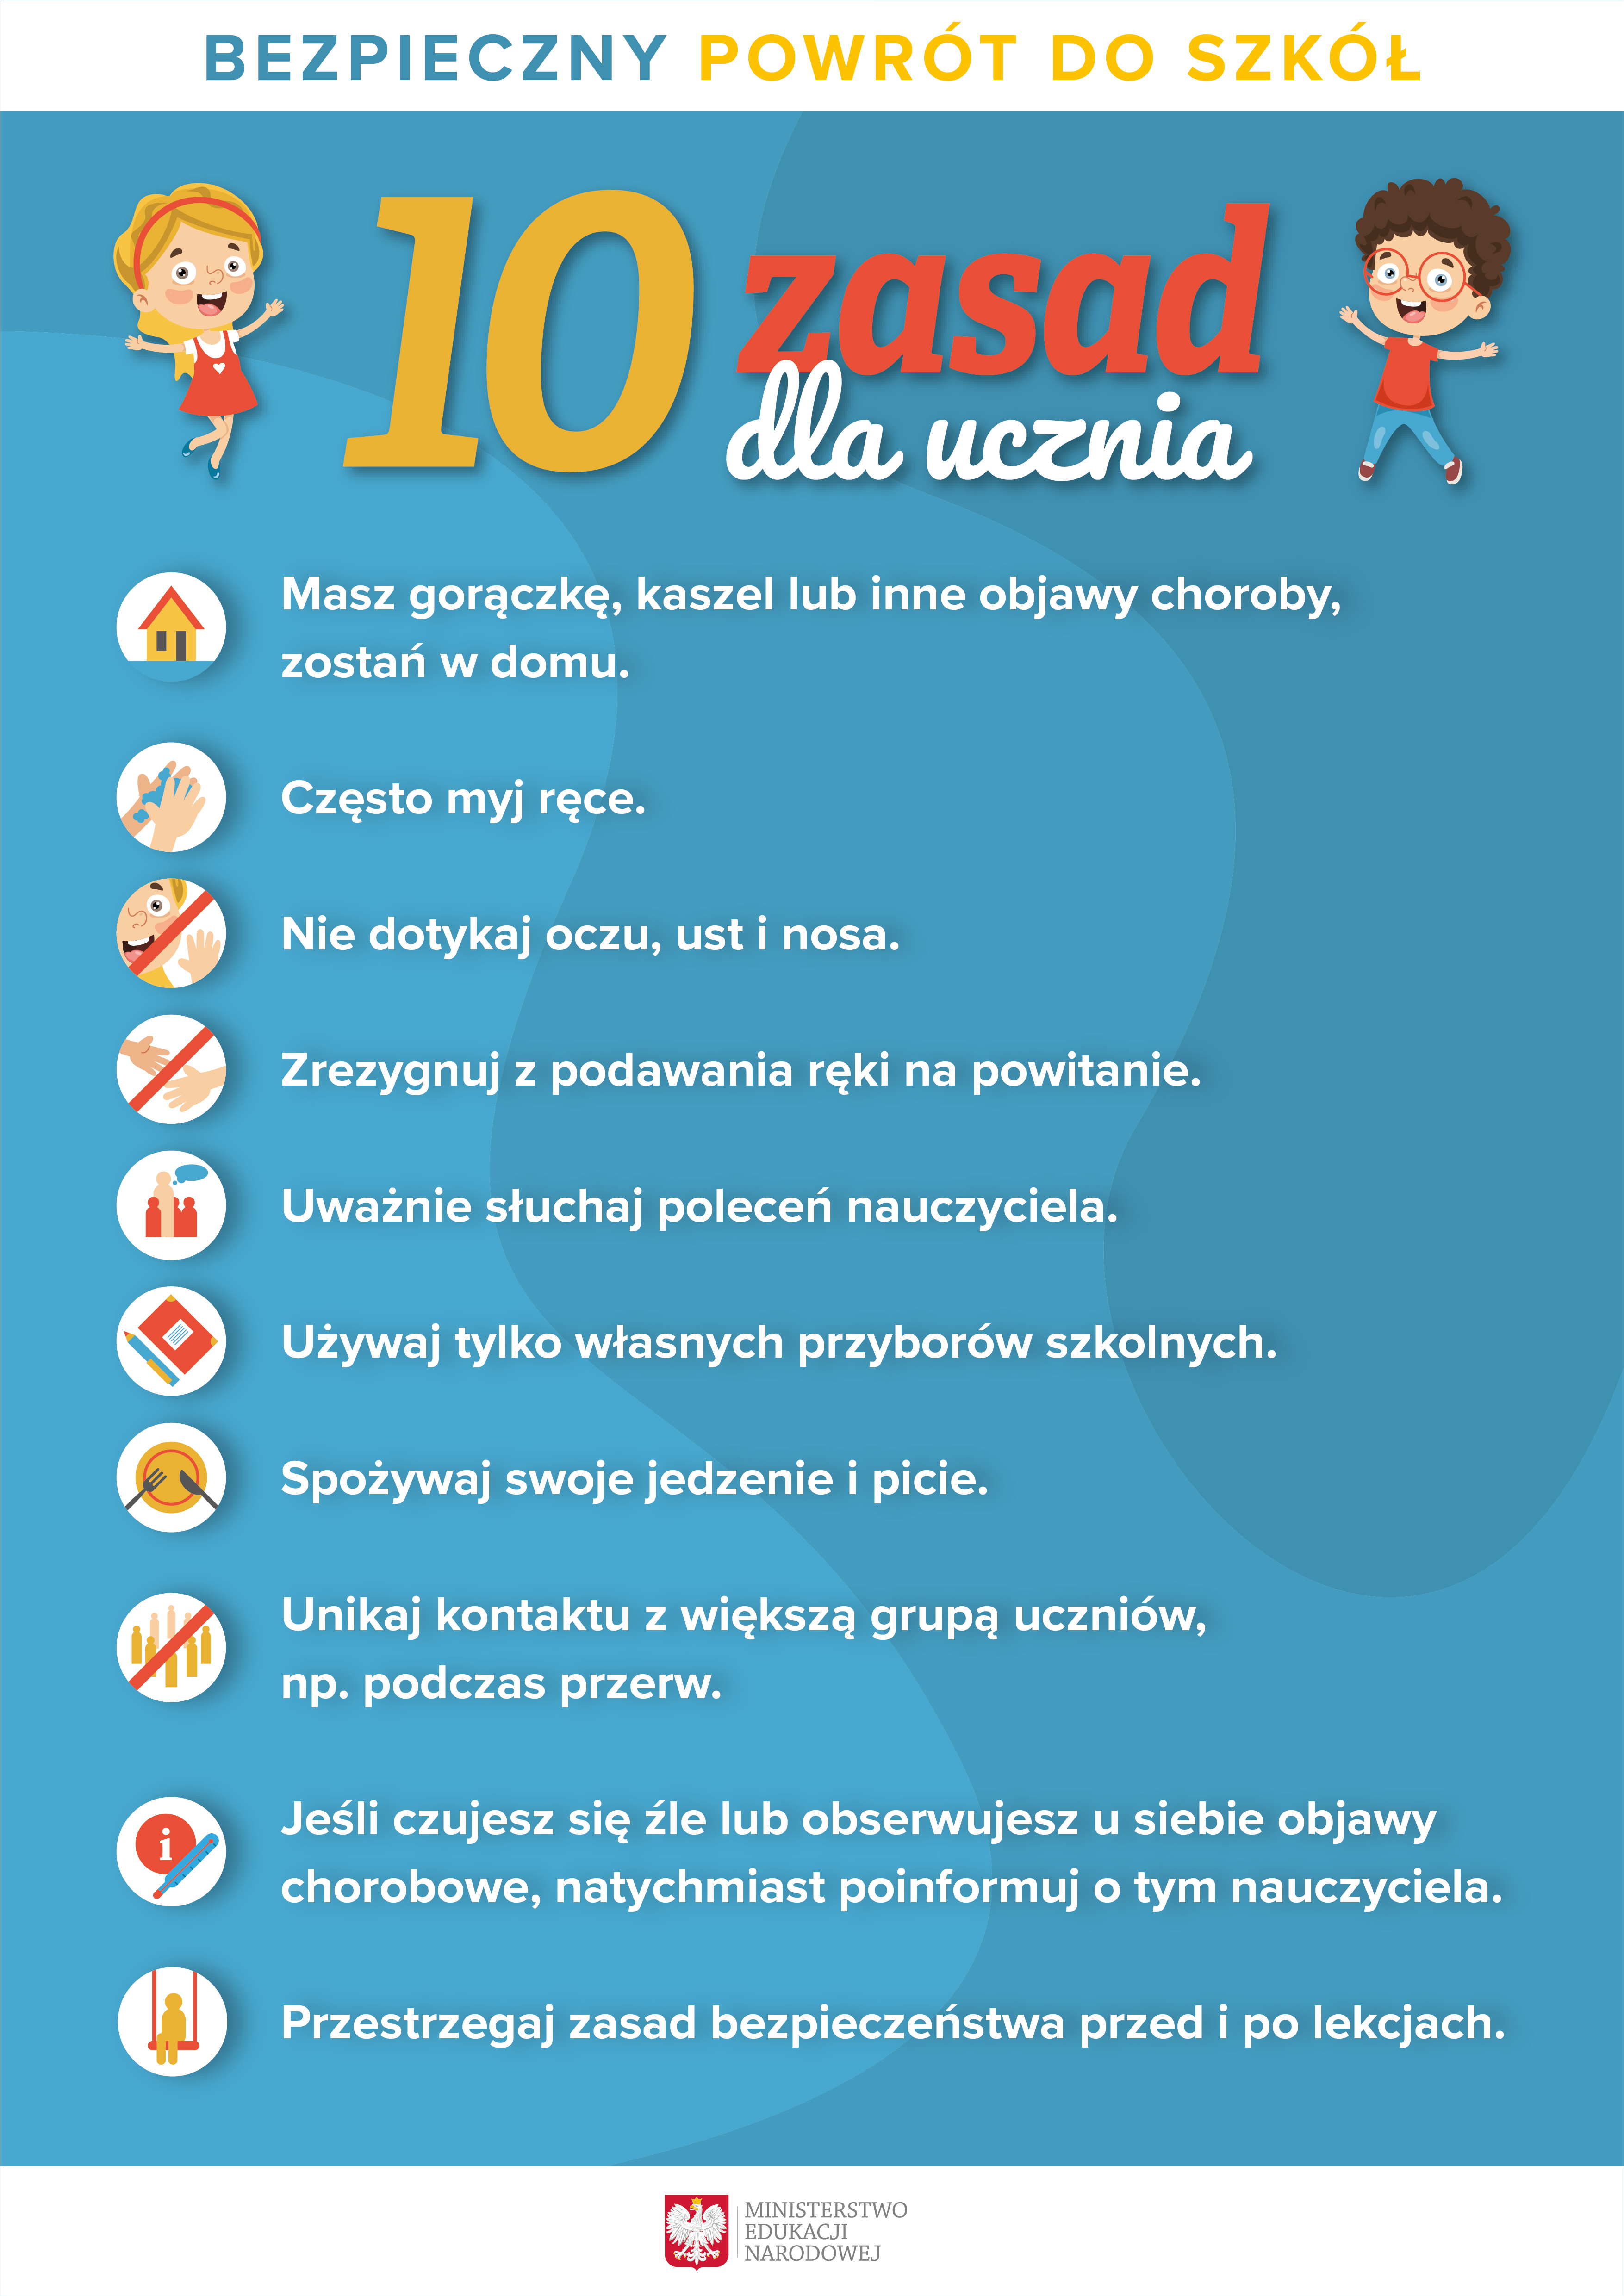 10 zasad dla uczniów